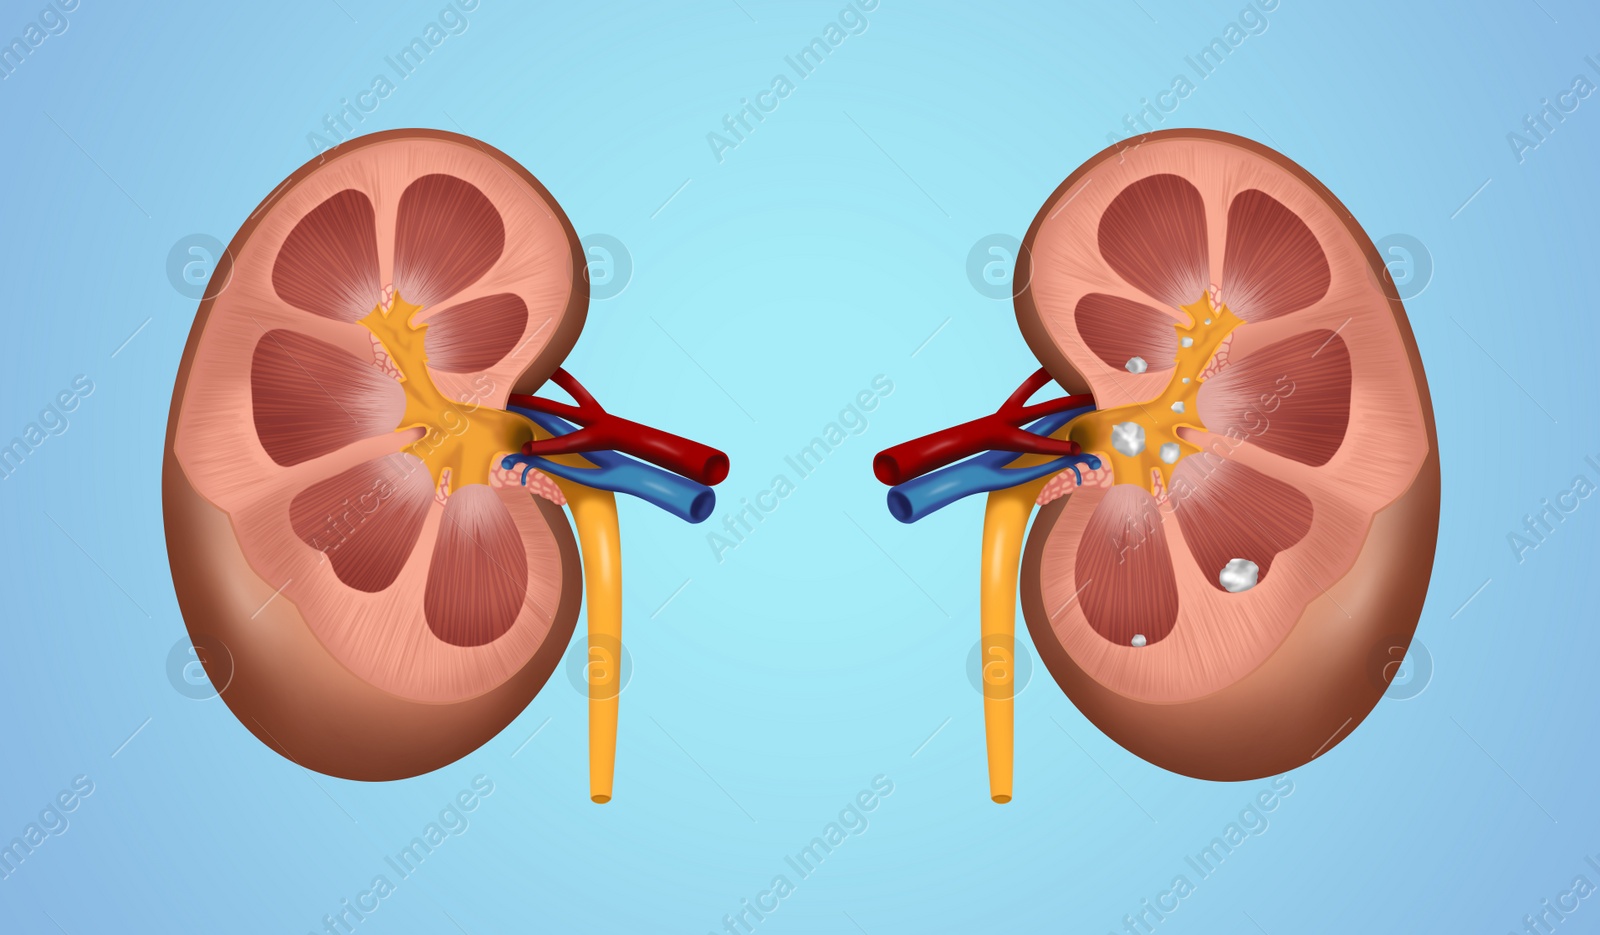 Illustration of  human kidney stones on blue background. Banner design